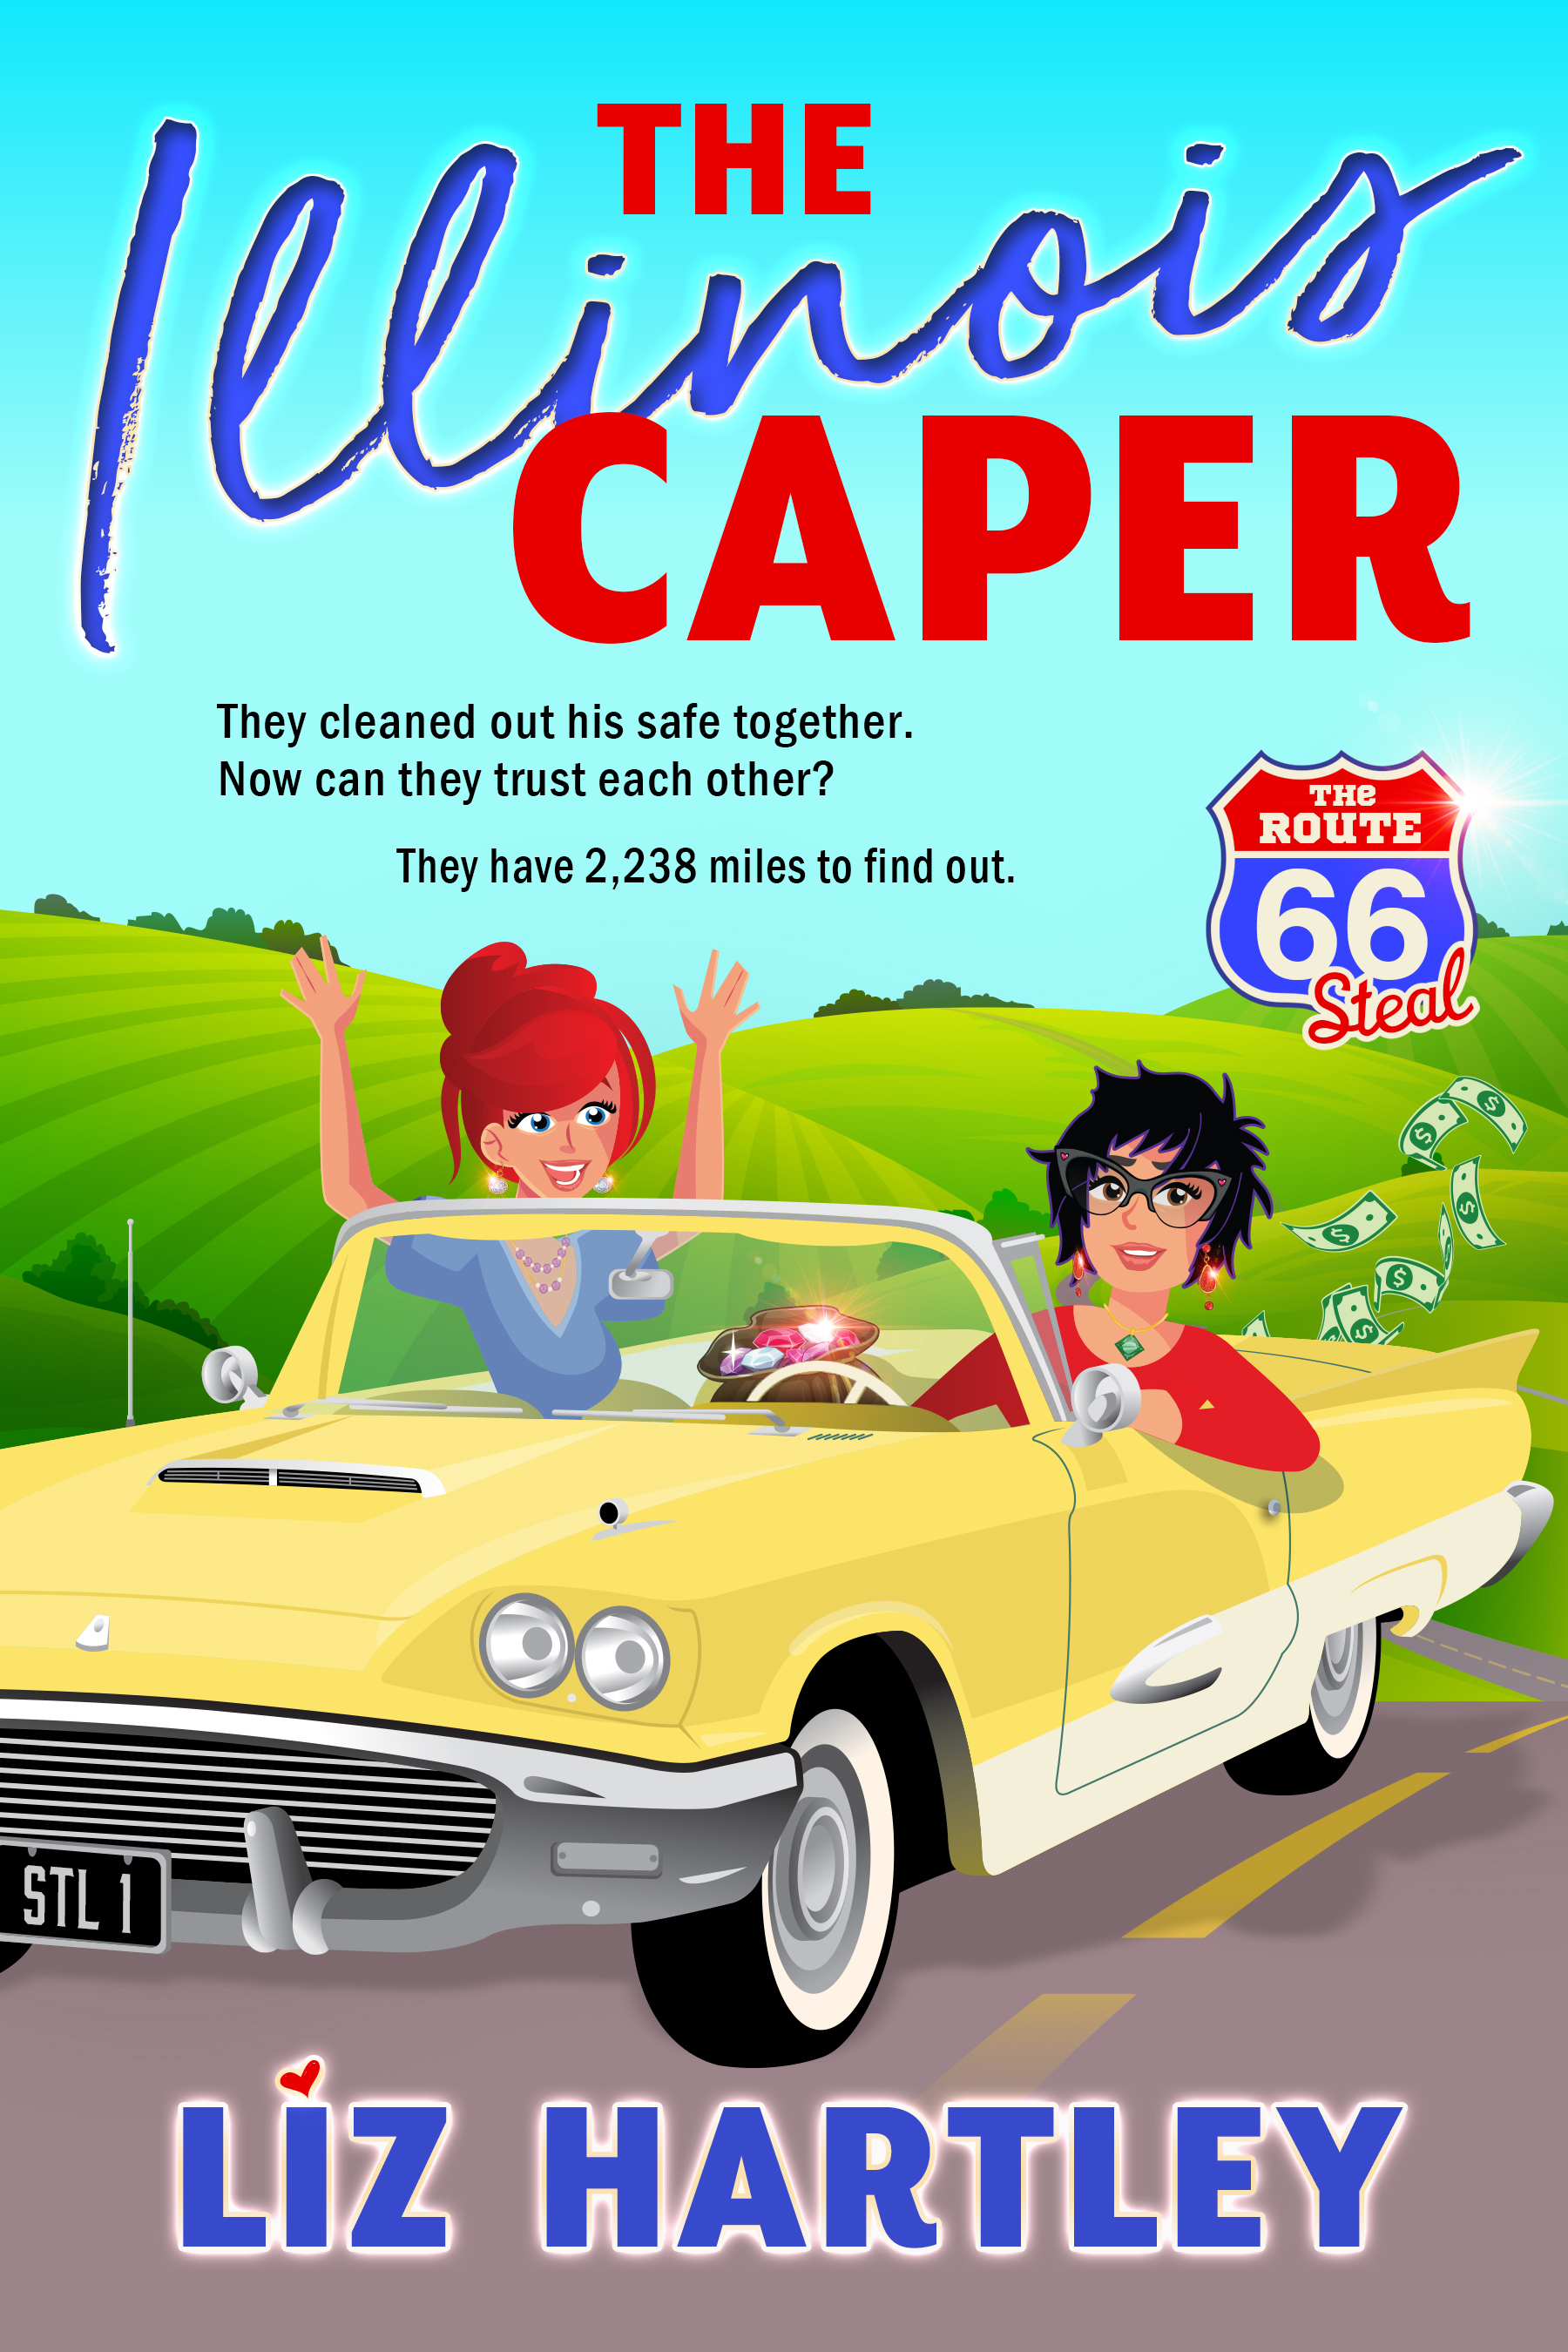 The Illinois Caper cover